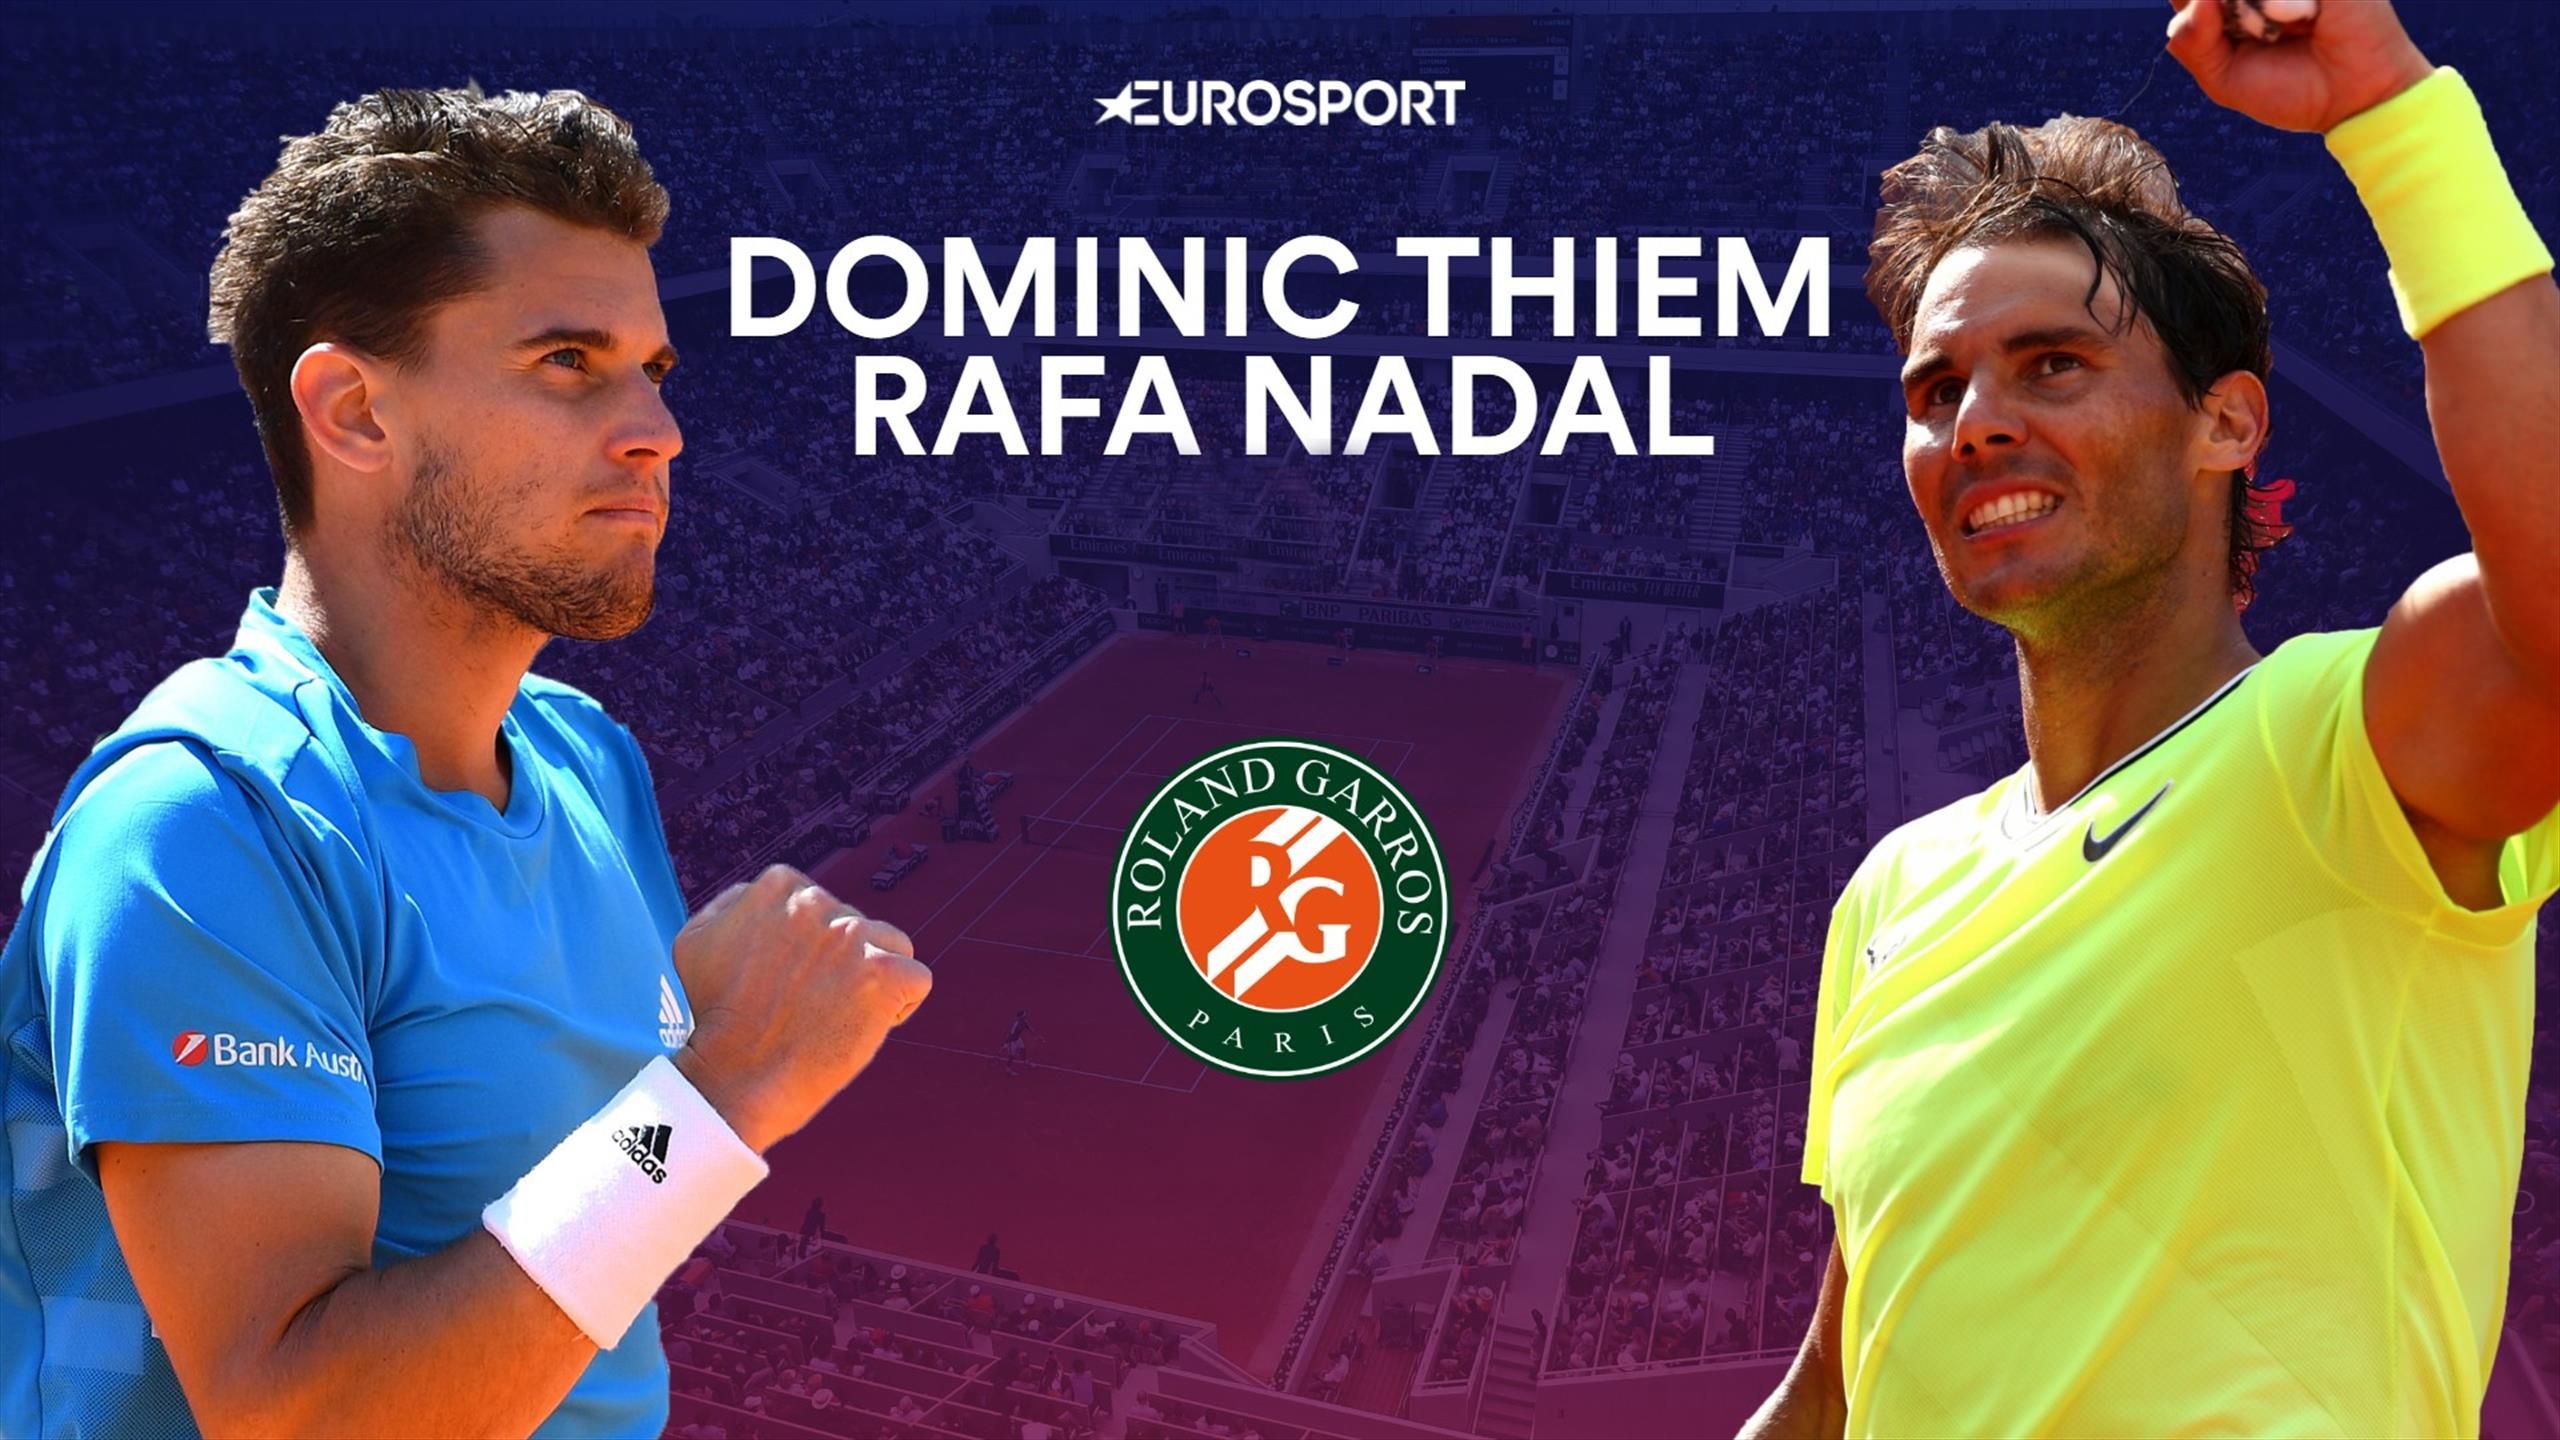 French Open Finale Dominic Thiem - Rafael Nadal jetzt live im TV und Livestream